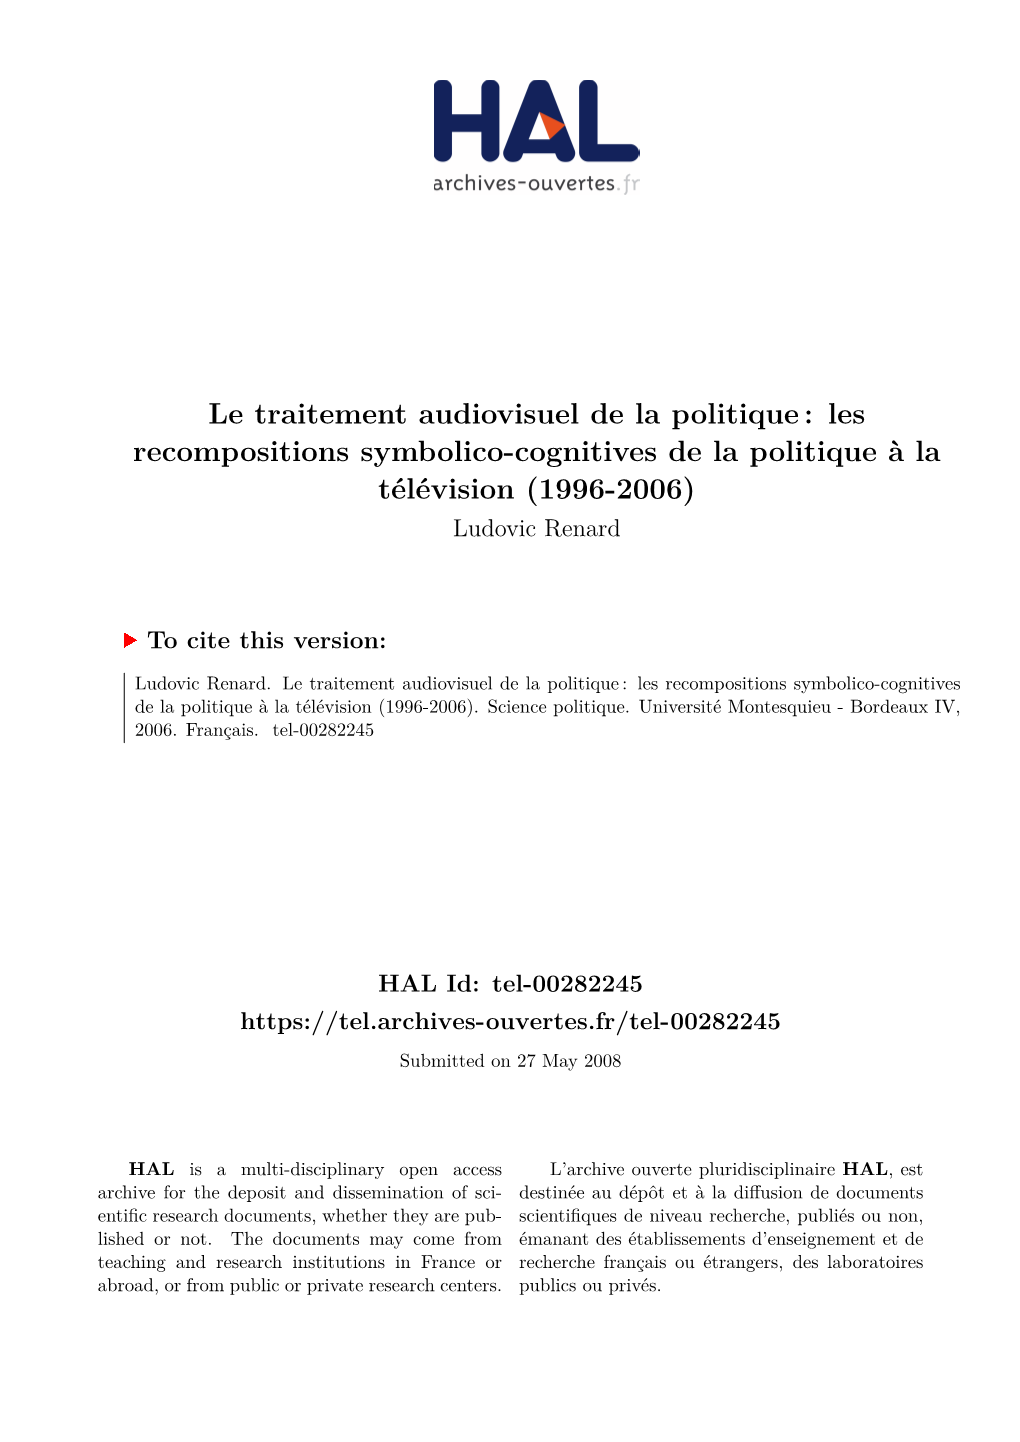 Le Traitement Audiovisuel De La Politique : Les Recompositions Symbolico-Cognitives De La Politique À La Télévision (1996-2006) Ludovic Renard